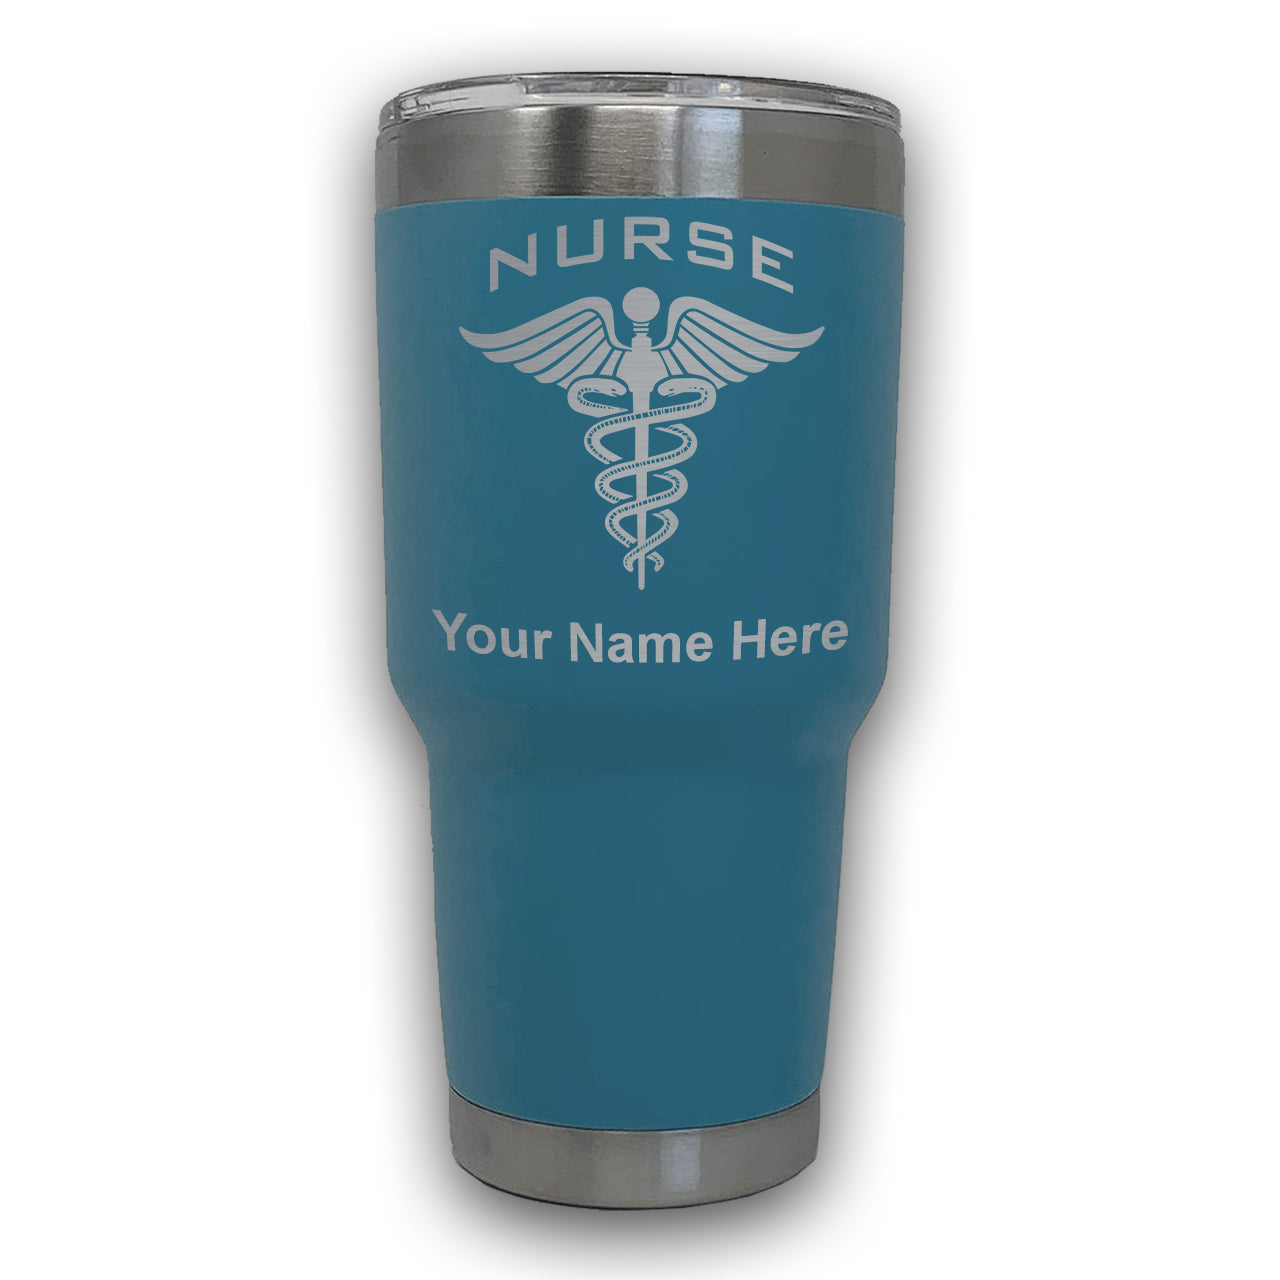 LaserGram 30oz Tumbler Mug, Nurse, Personalized Engraving Included